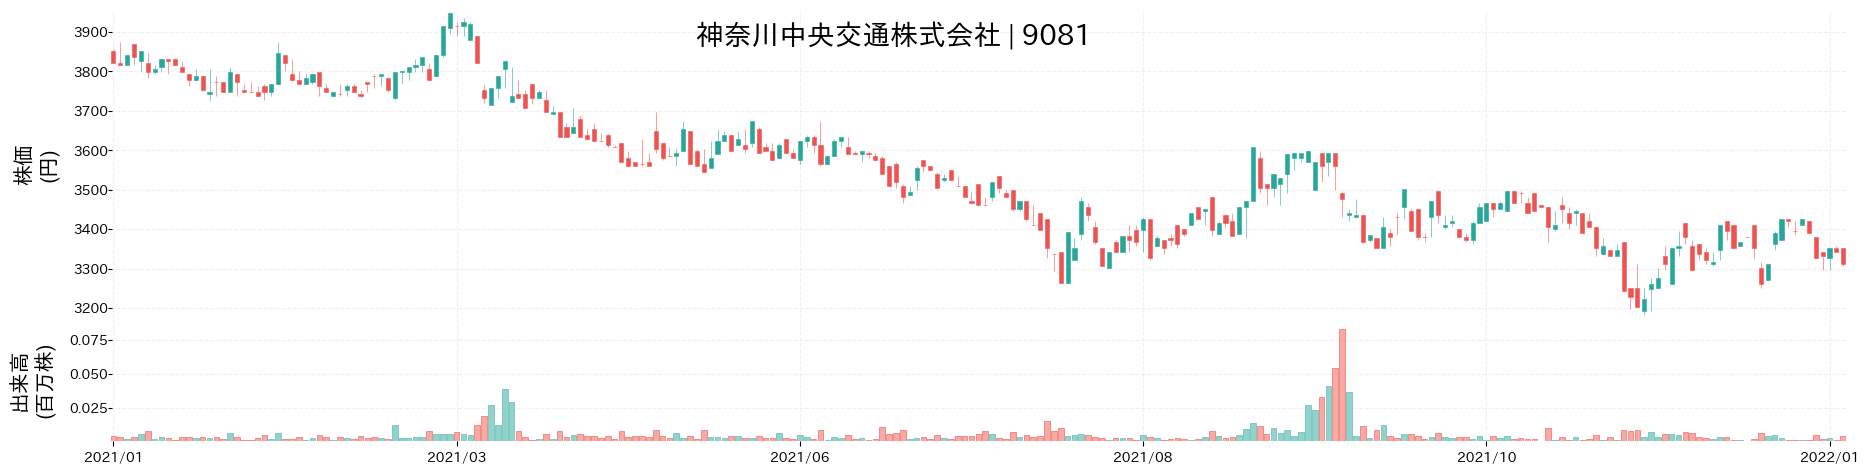 神奈川中央交通の株価推移(2021)